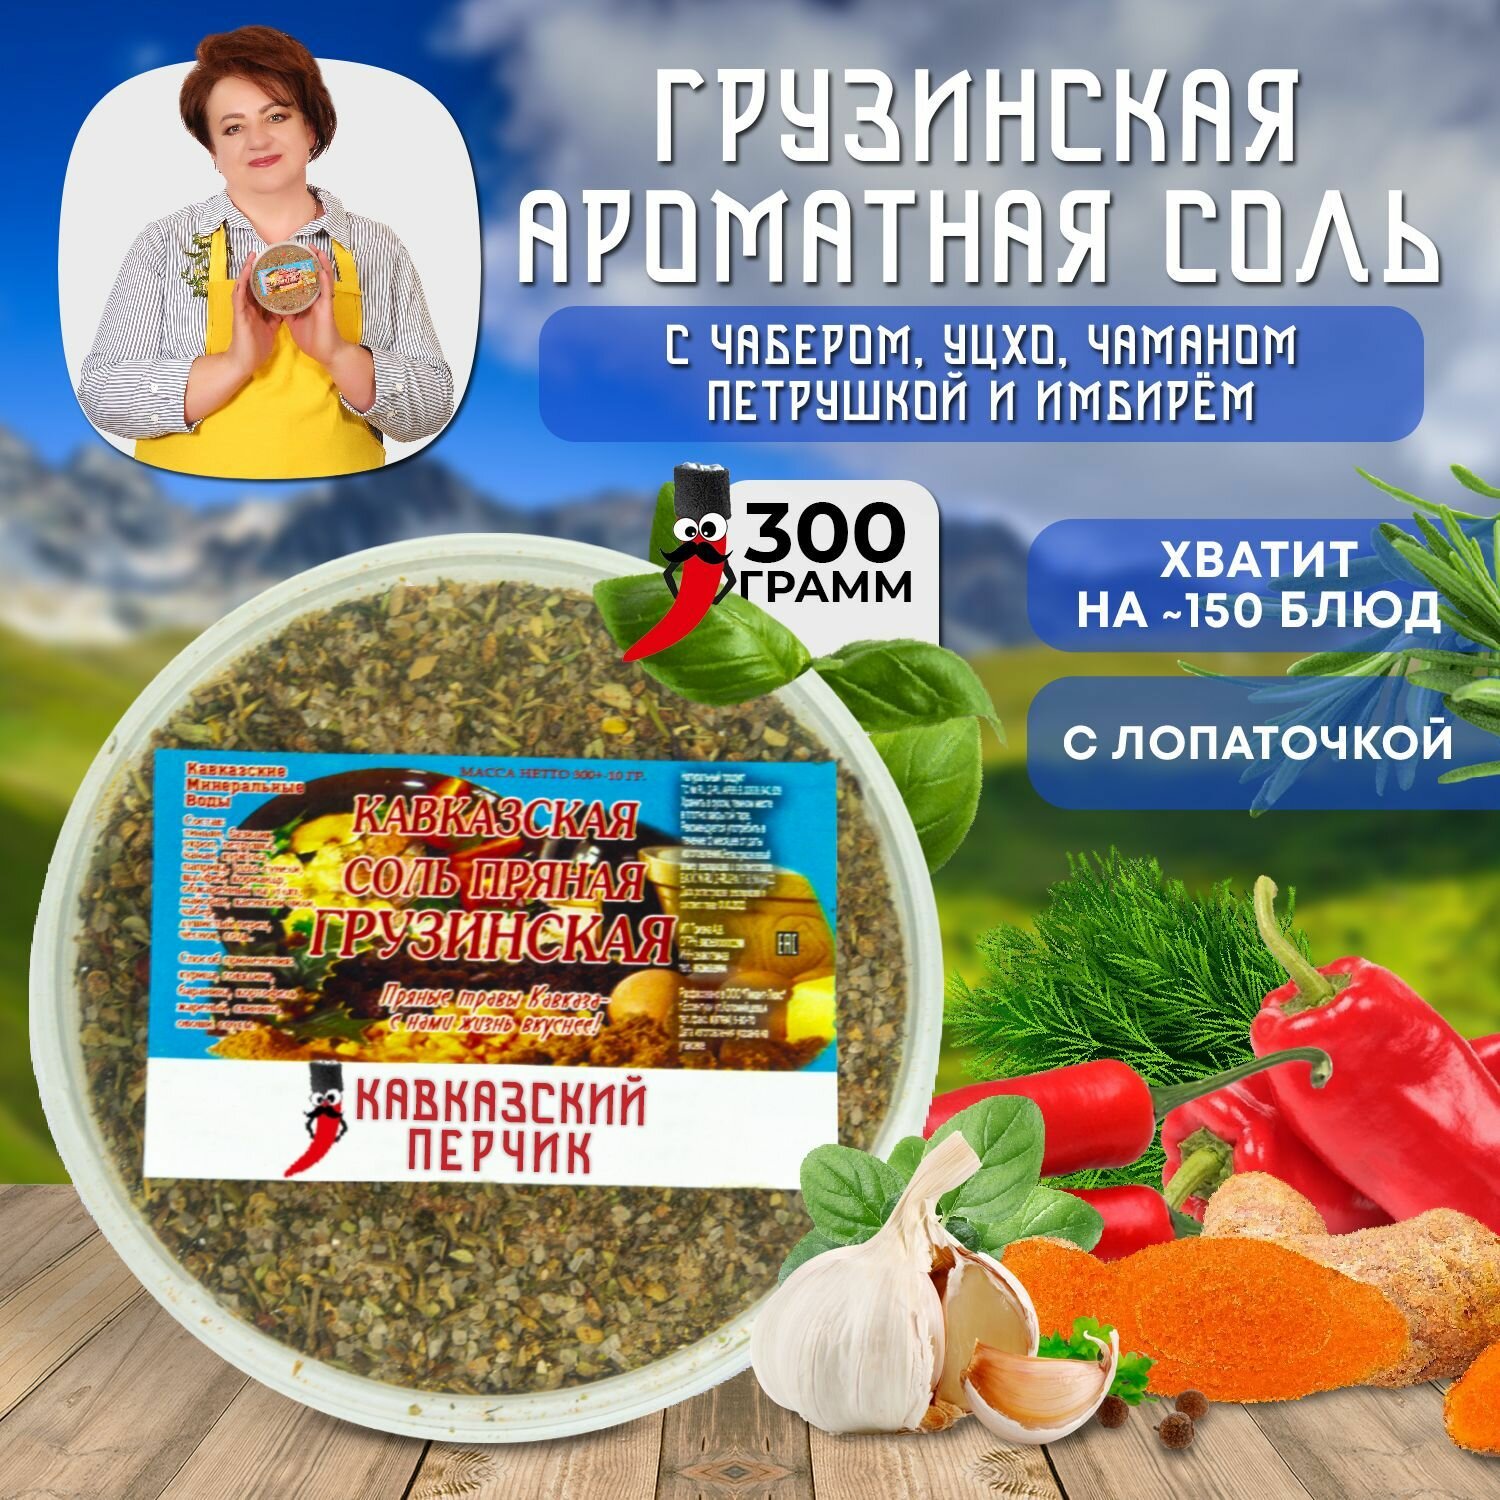 Грузинская соль, 300гр / Универсальная приправ с чабером и тимьяном для мяса, овощей / Кавказские специи